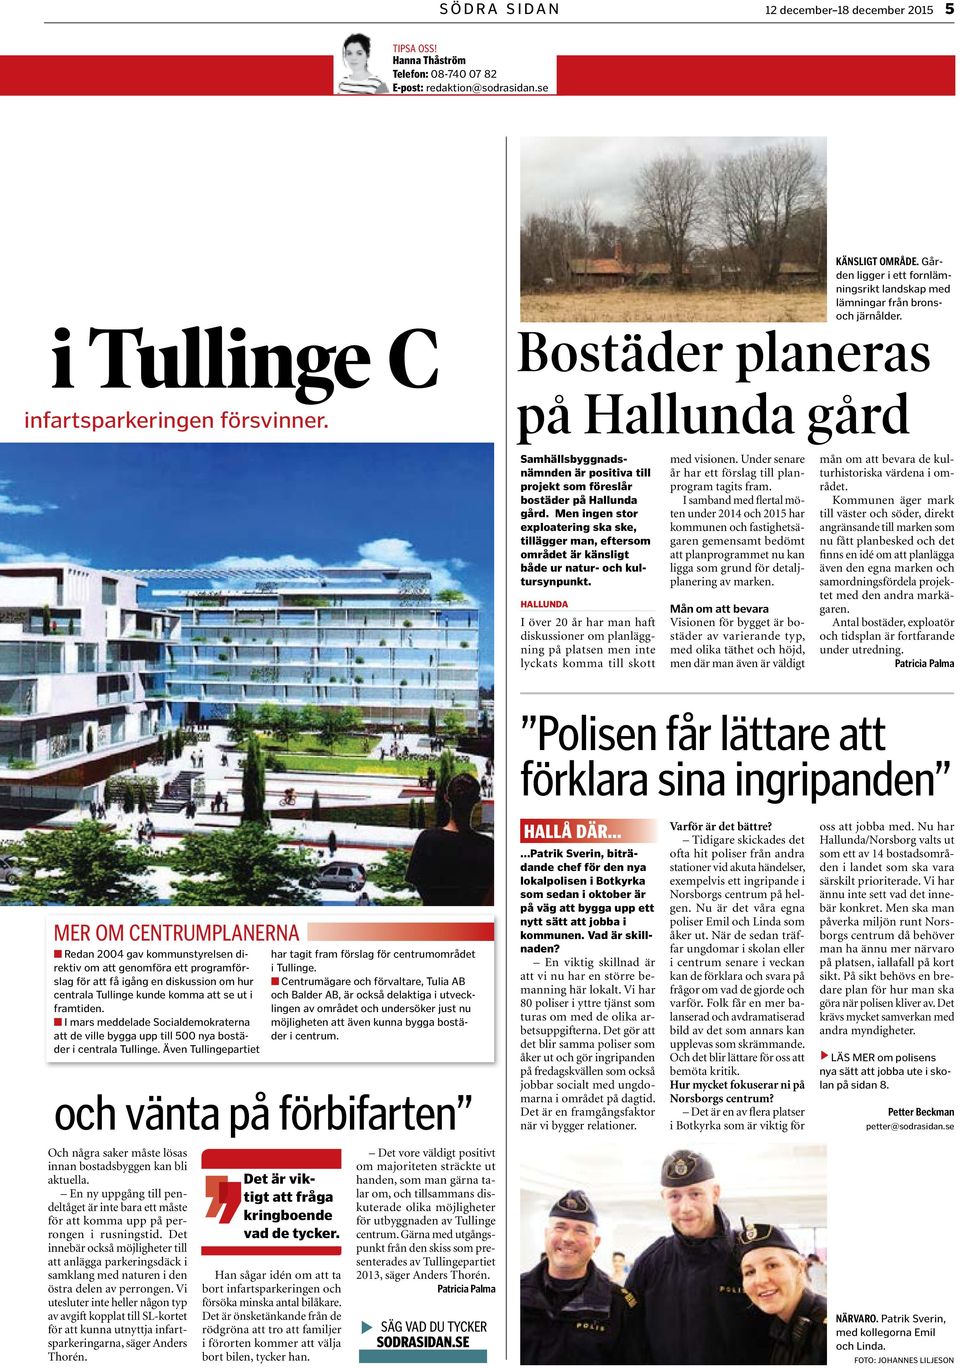 Bostäder planeras på Hallunda gård Samhällsbyggnadsnämnden är positiva till projekt som föreslår bostäder på Hallunda gård.